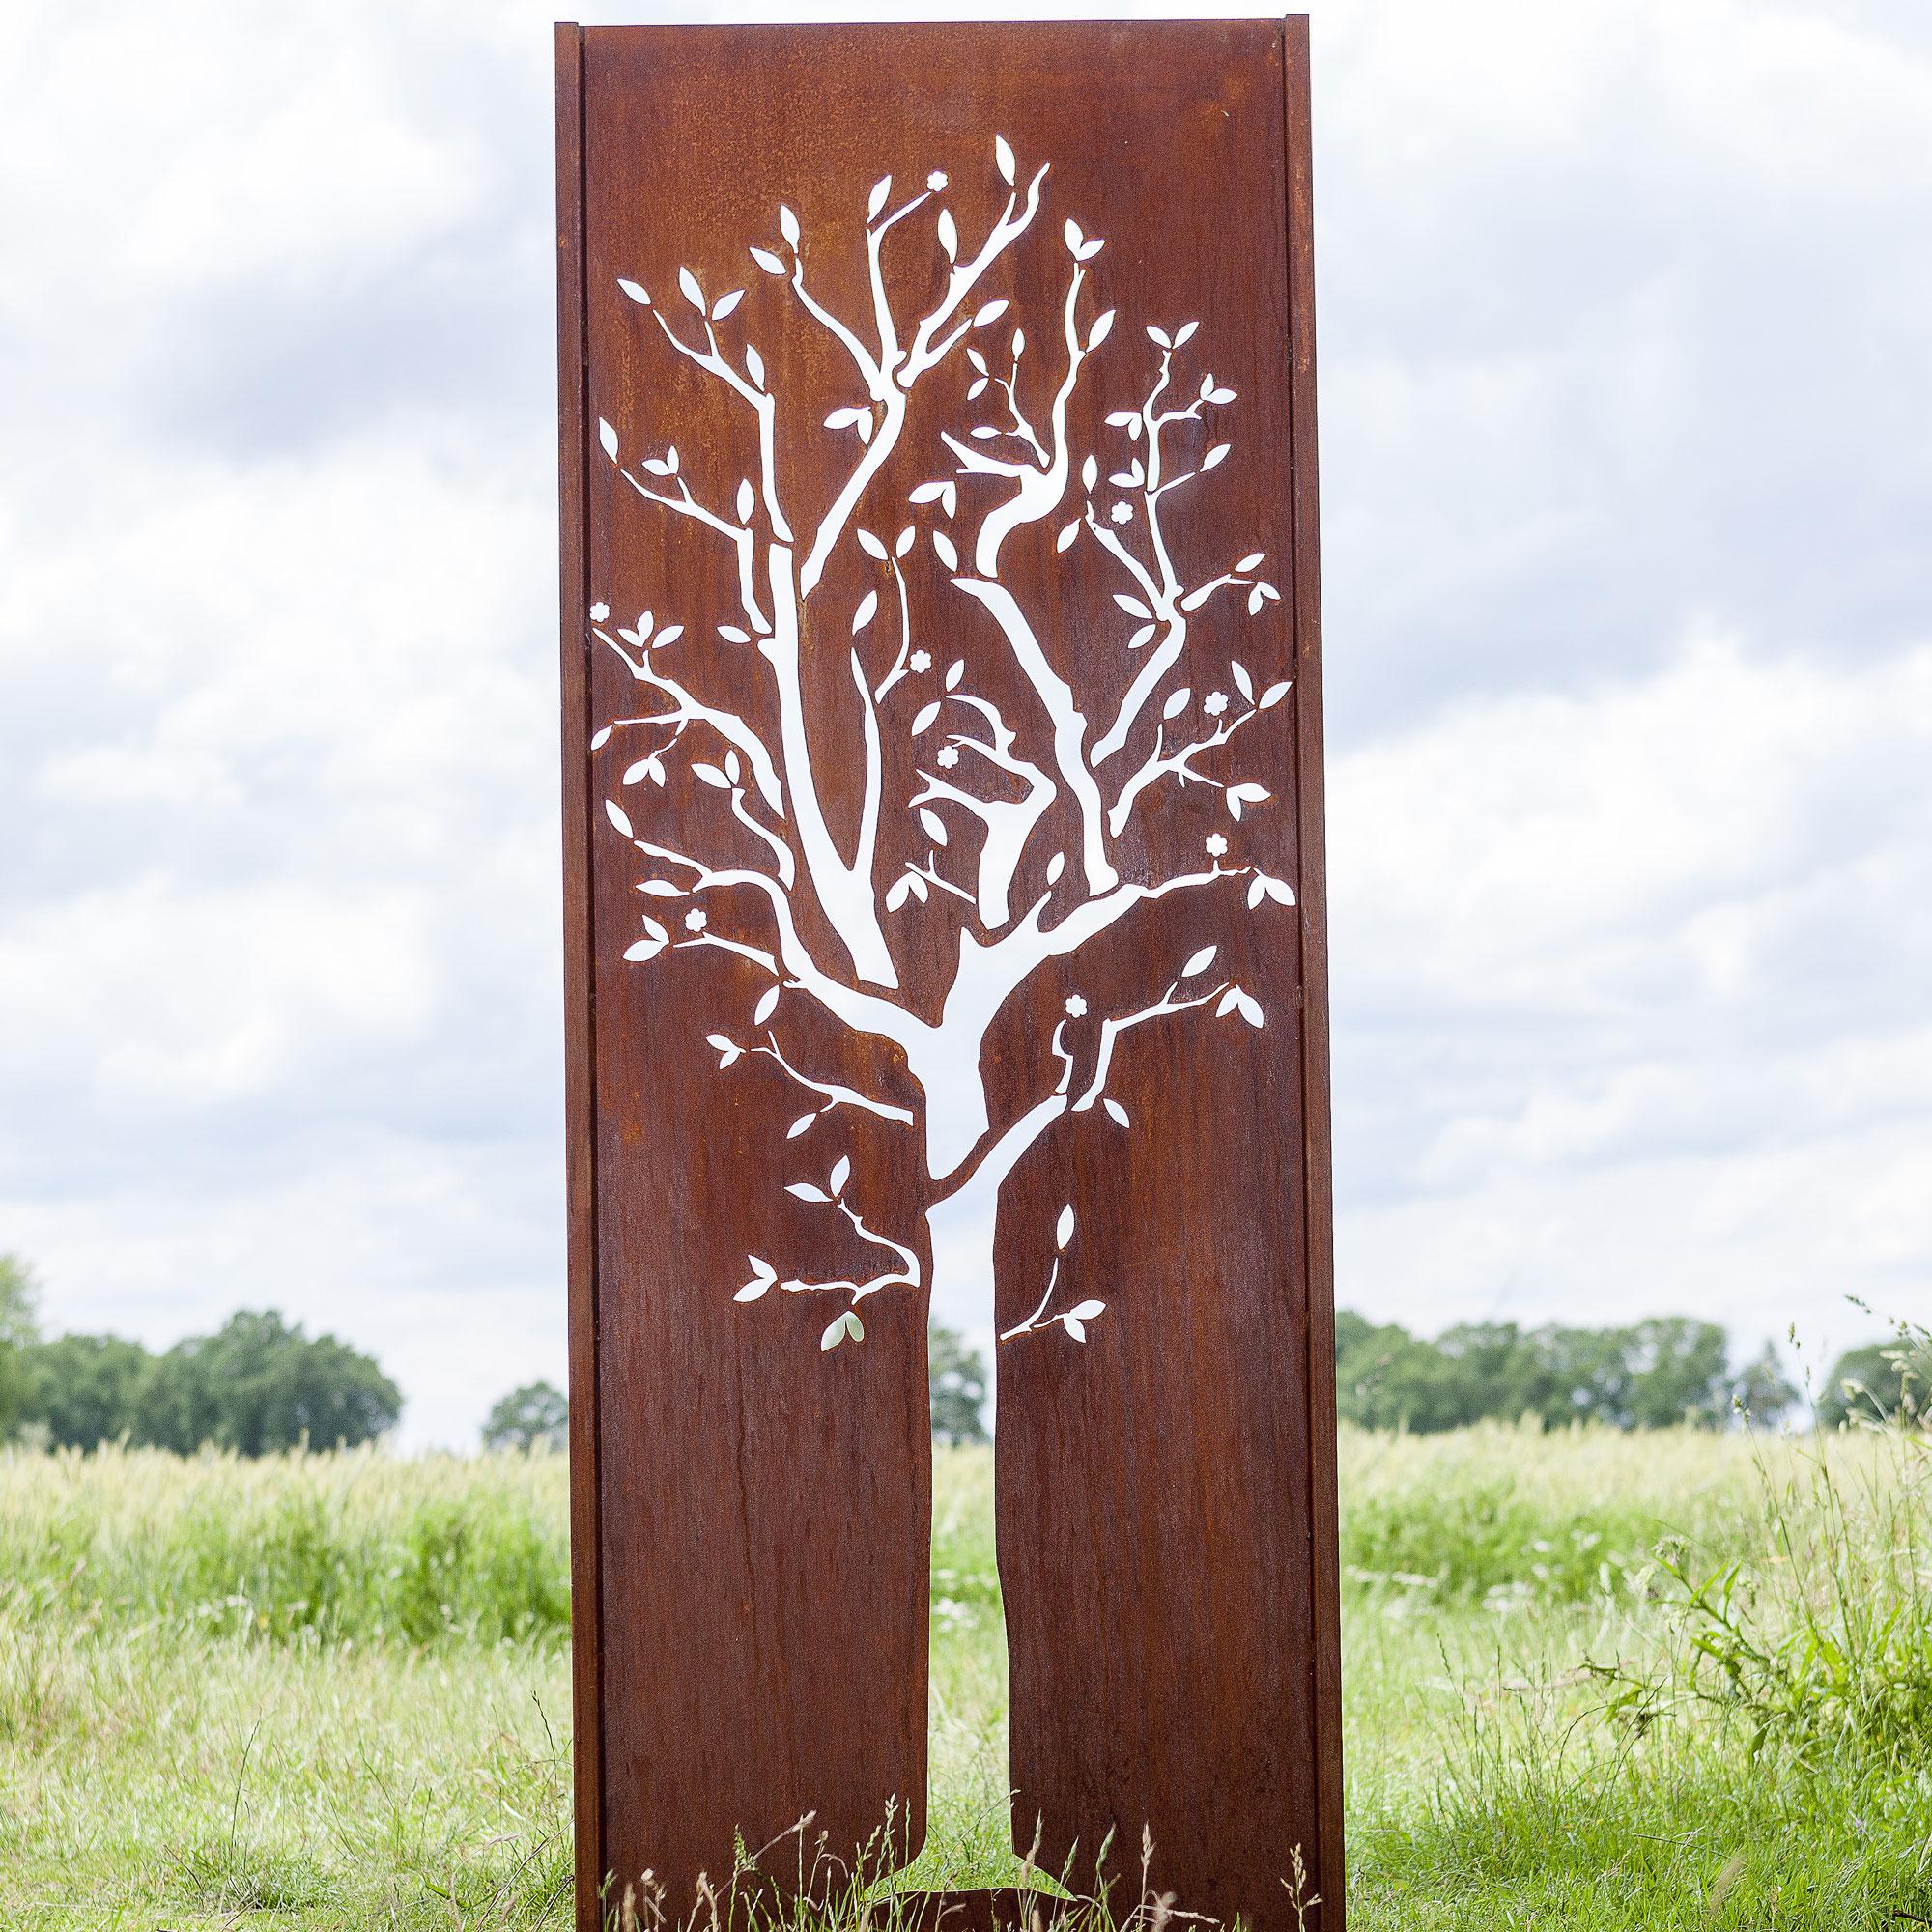 Steel Garden Wall - "Tree" - 75×195 cm - Modern Outdoor Ornament - Sculpture by Stefan Traloc